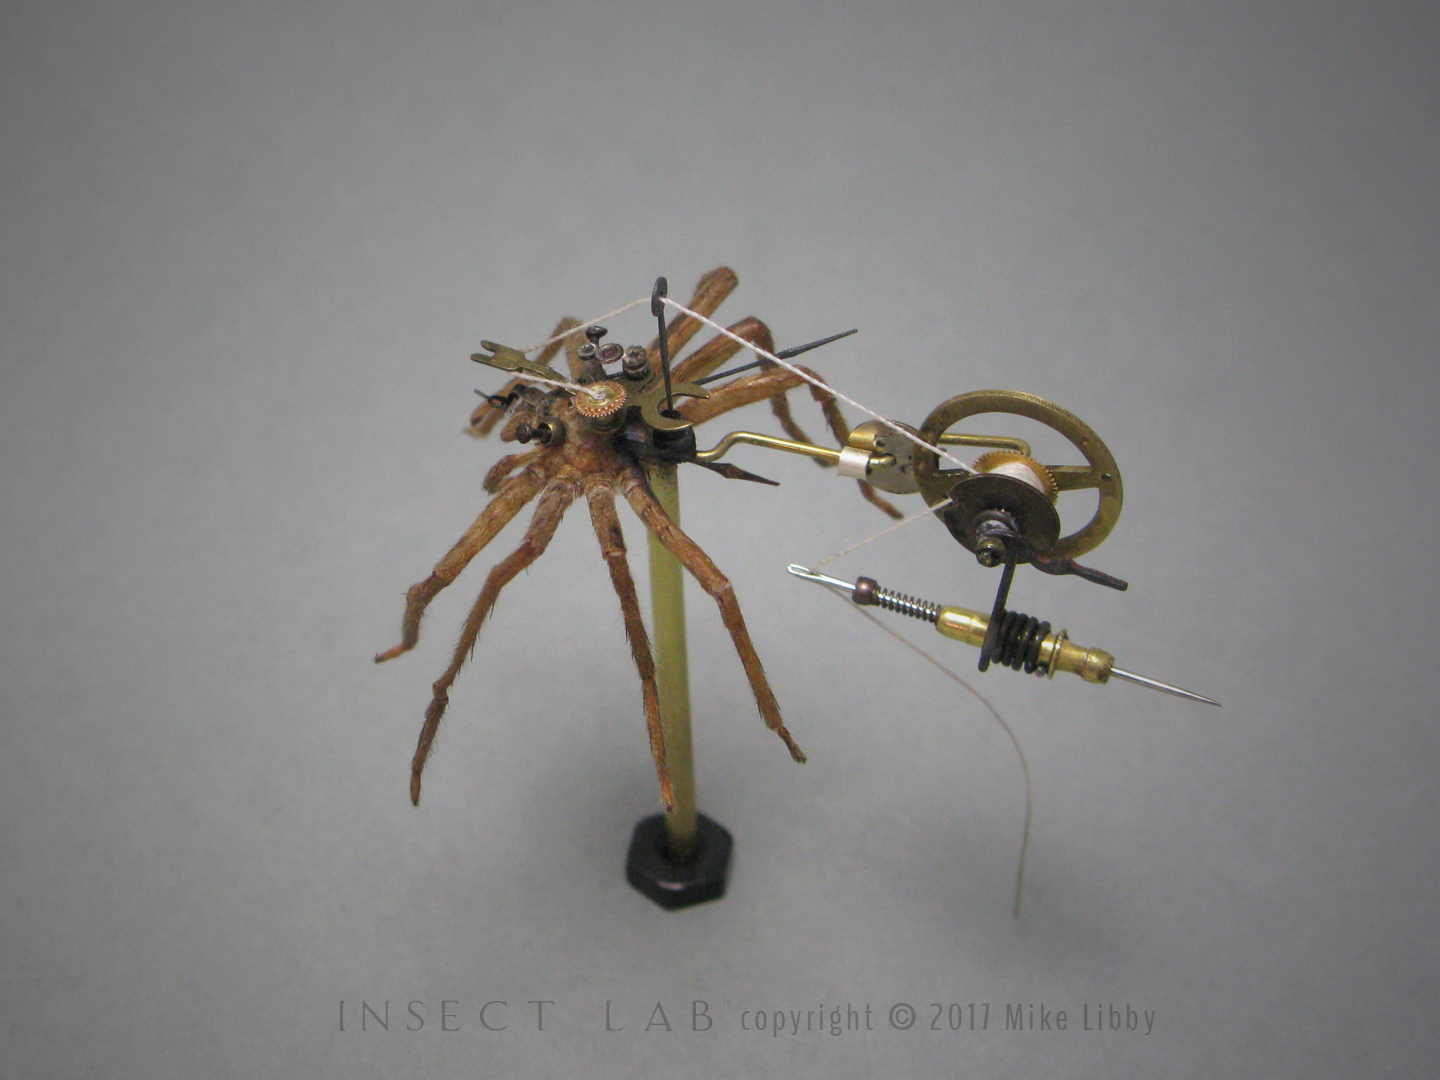 Steampunk Metal Wolf Spider Model